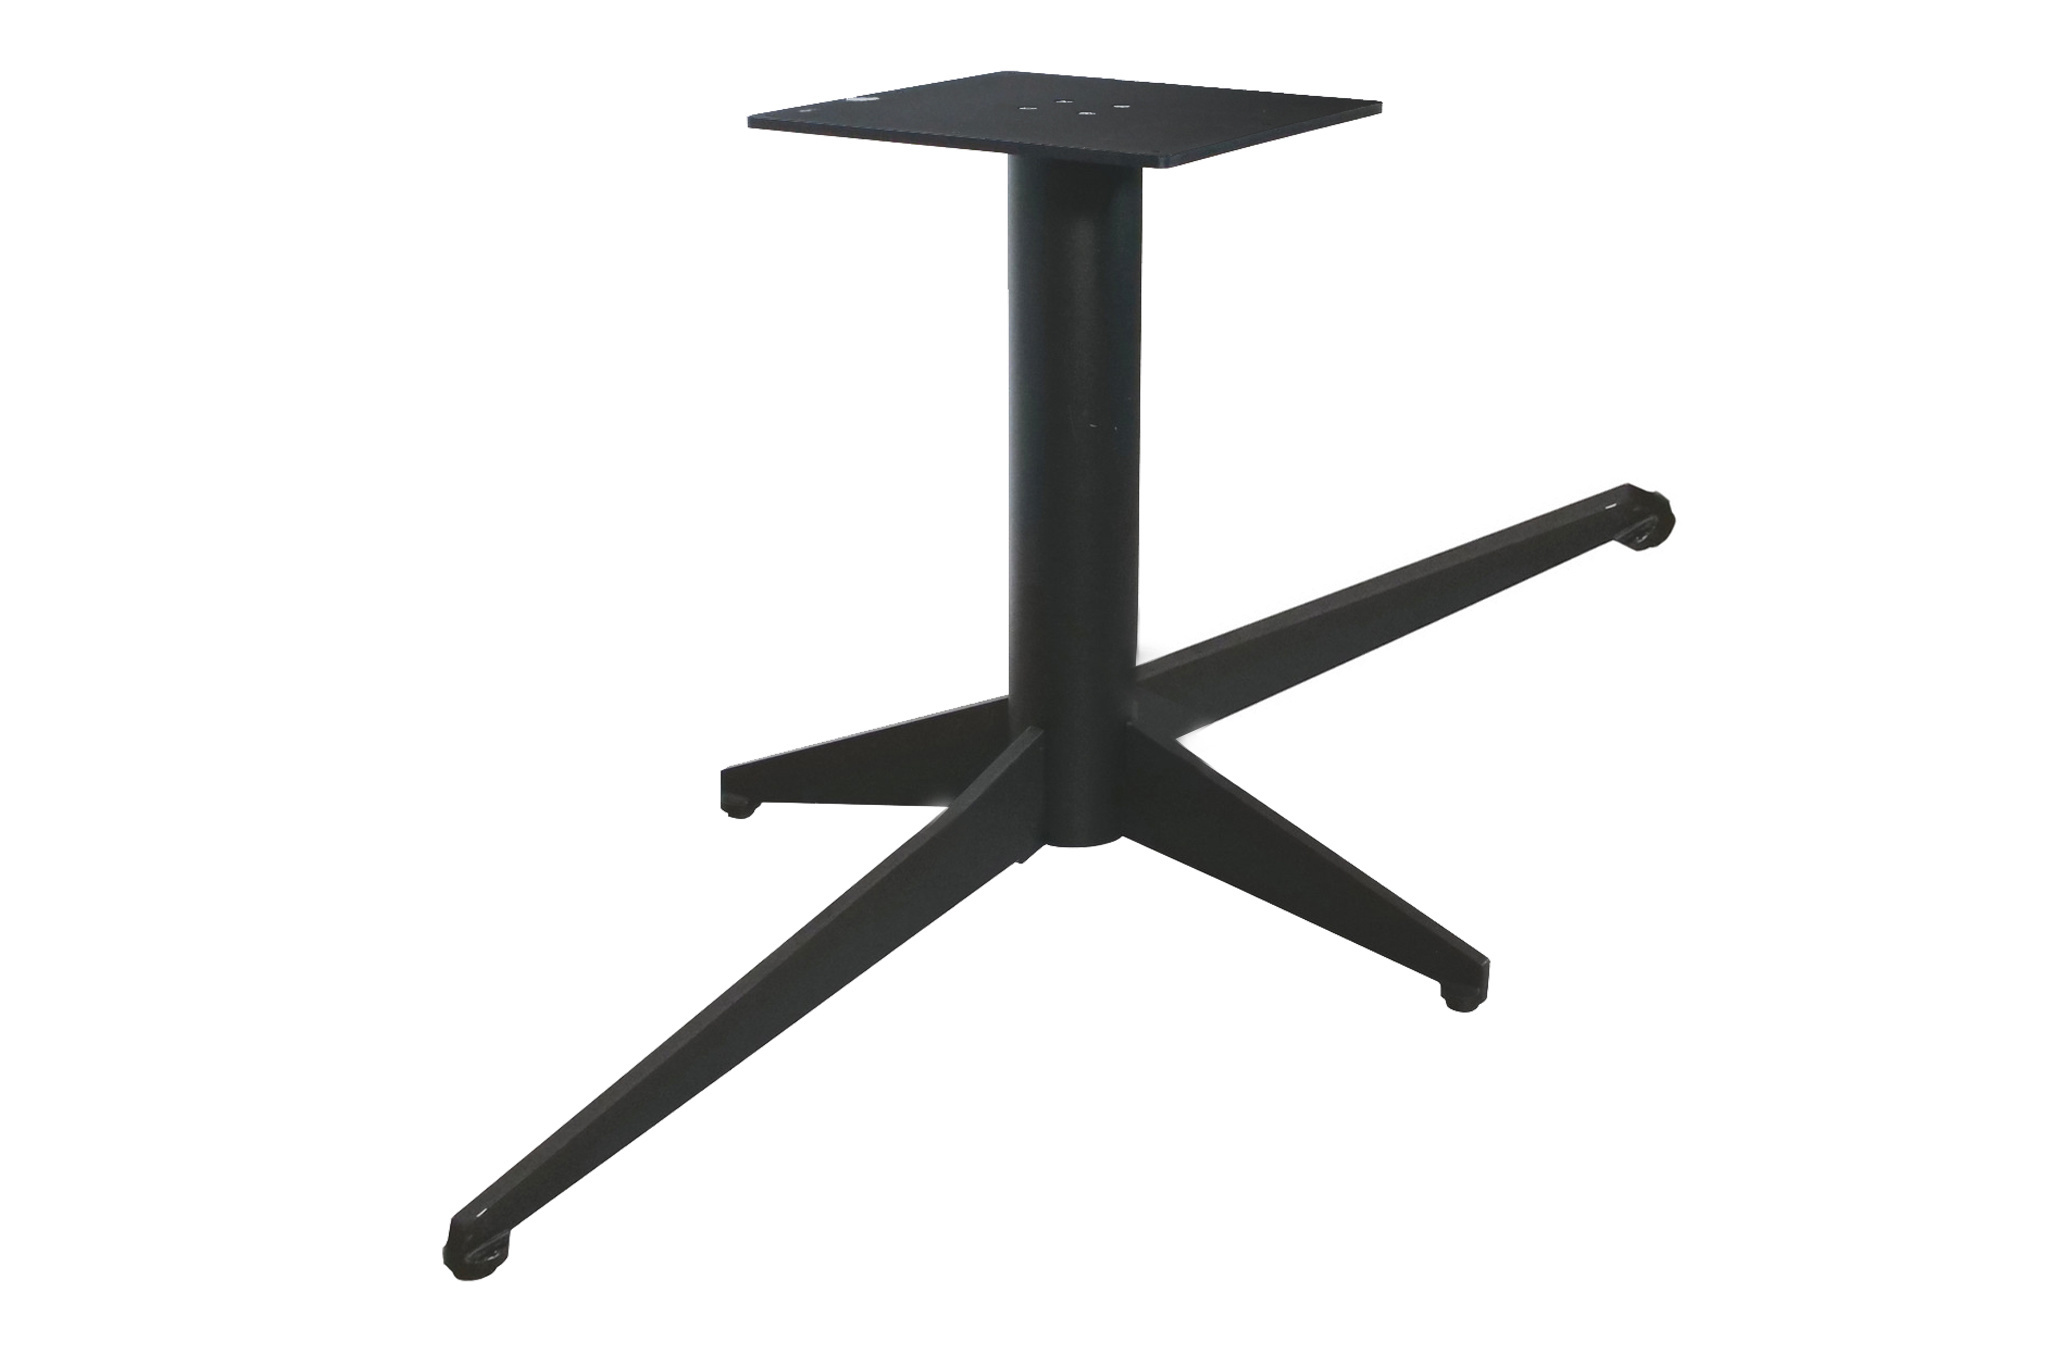  Tischgestell Metall 4-Fuß - 80x180 cm breit - 72,5 cm hoch - Rohrprofil: 11,4 cm - Mehrteilig - Stahl Tischfuß / Mittelfuß - Rechteckig / Oval - Beschichtet - Schwarz